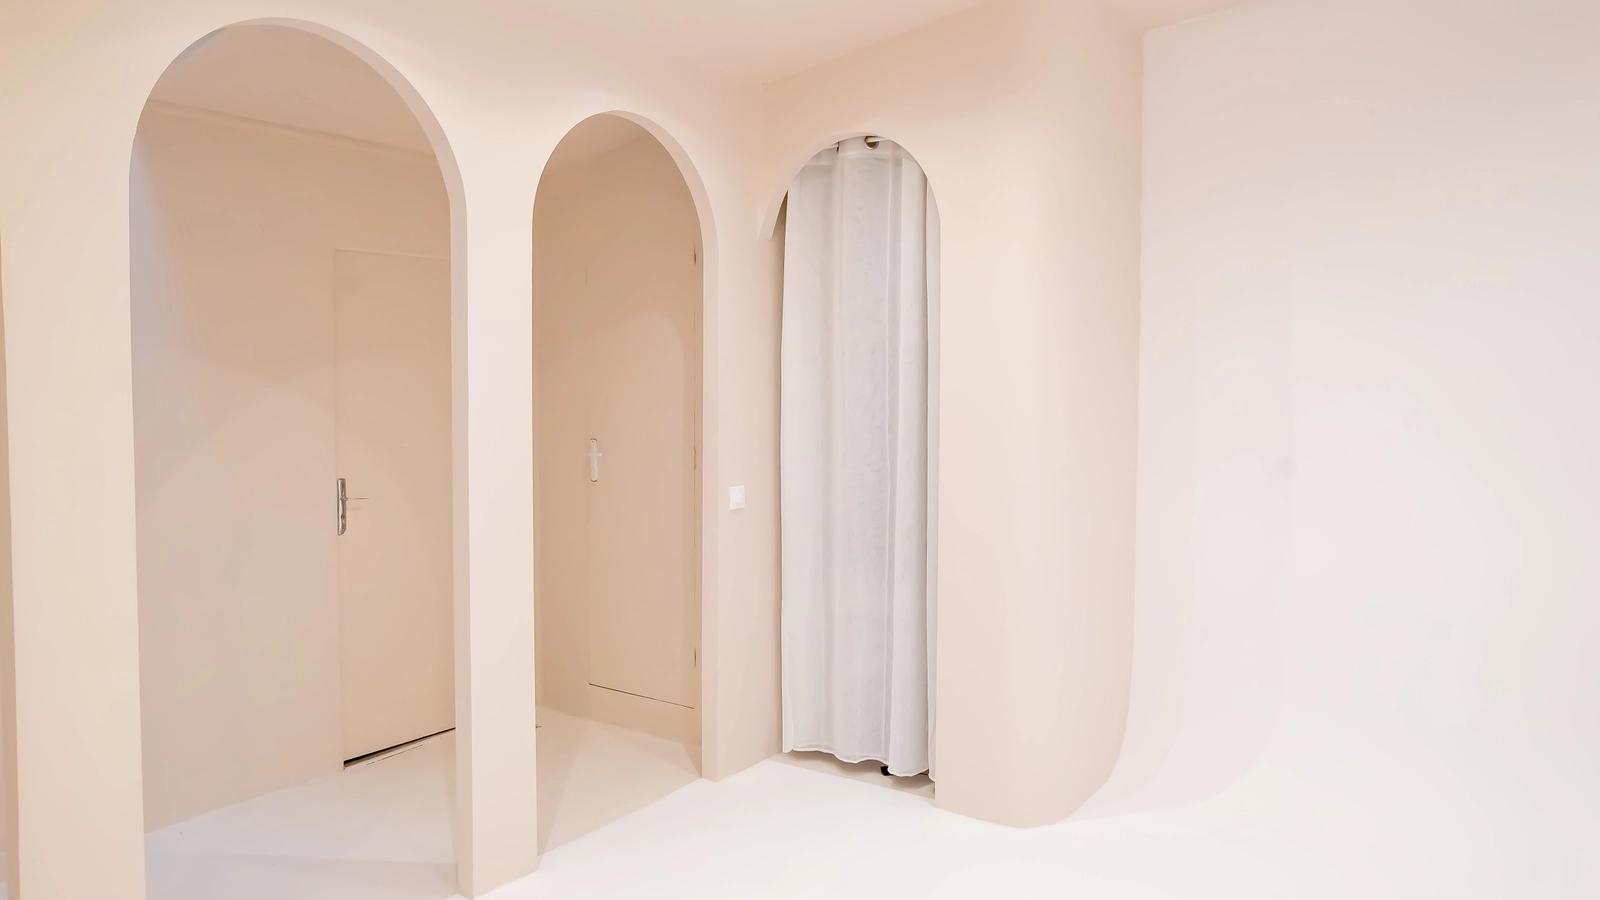 Salle de bain dans Studio photo sable intime et moderne - 0